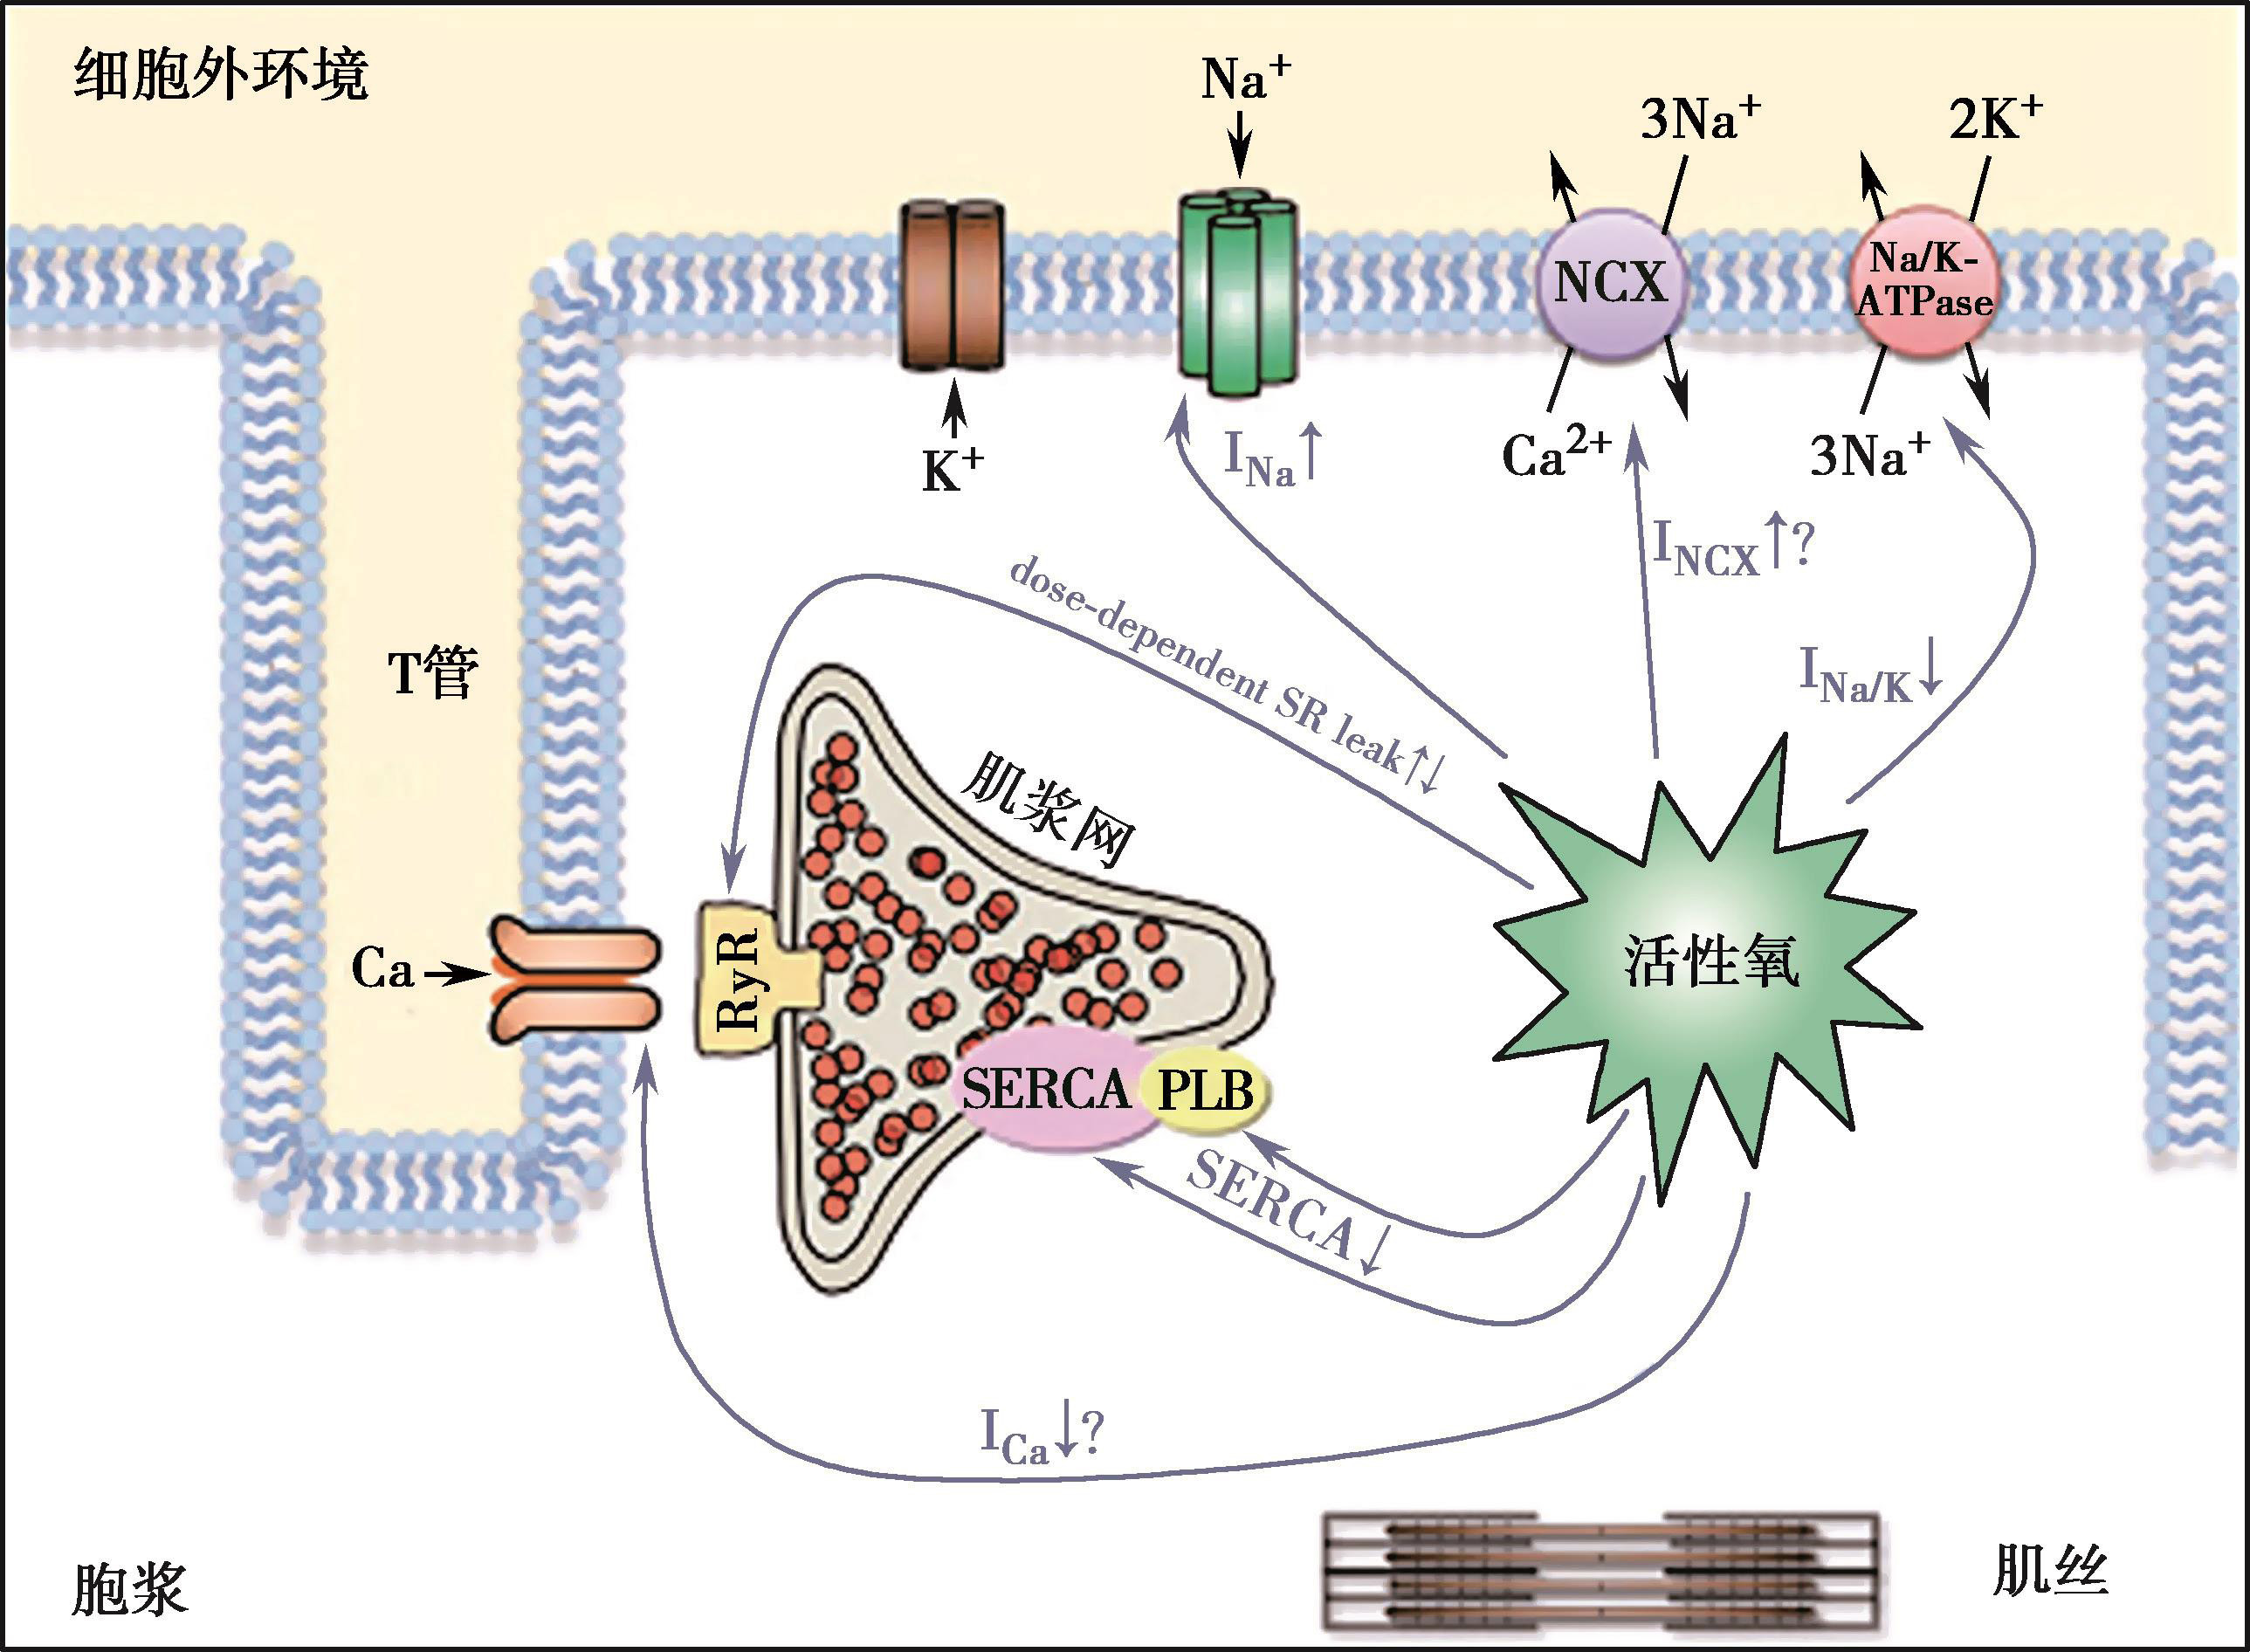 图1-10-2 ros对钠钙调节蛋白的影响